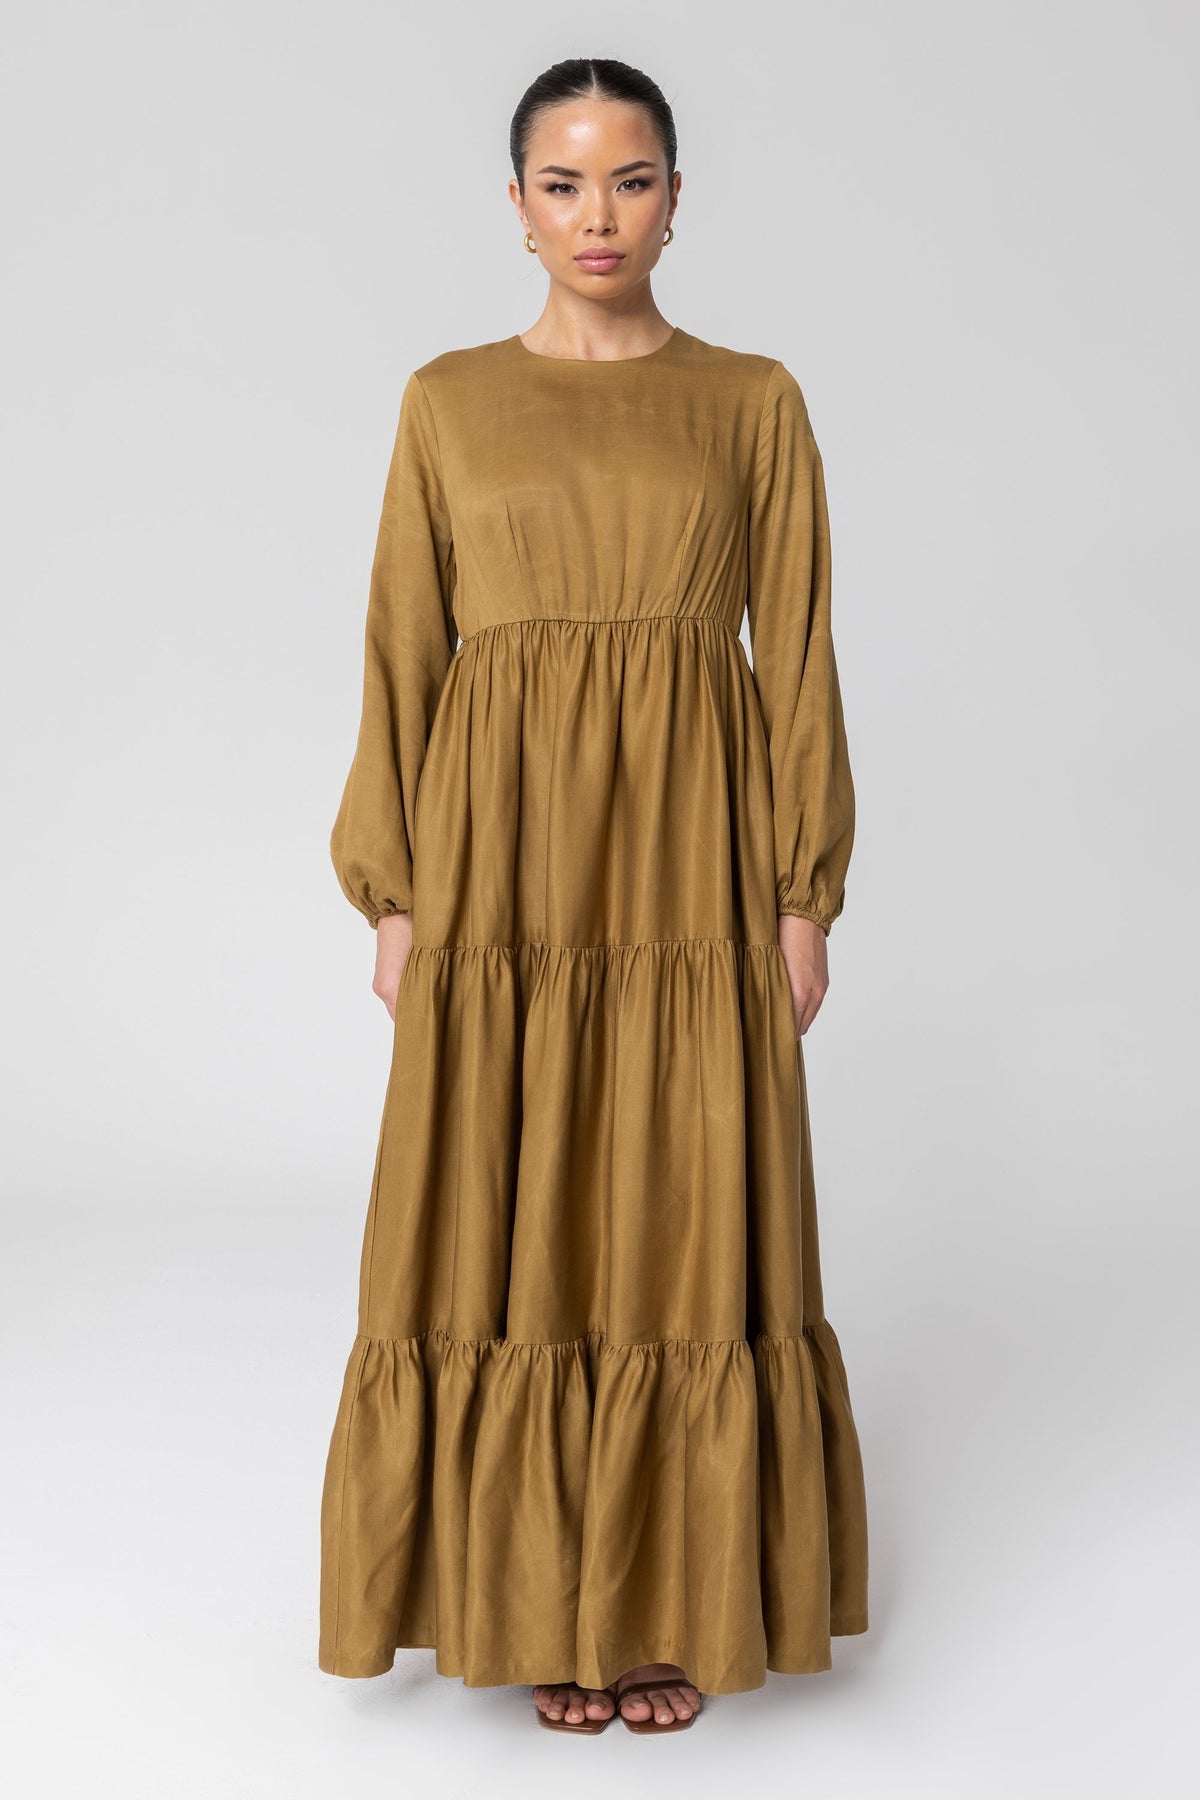 Tala Tiered Linen Maxi Dress - Green Moss Clothing Veiled 